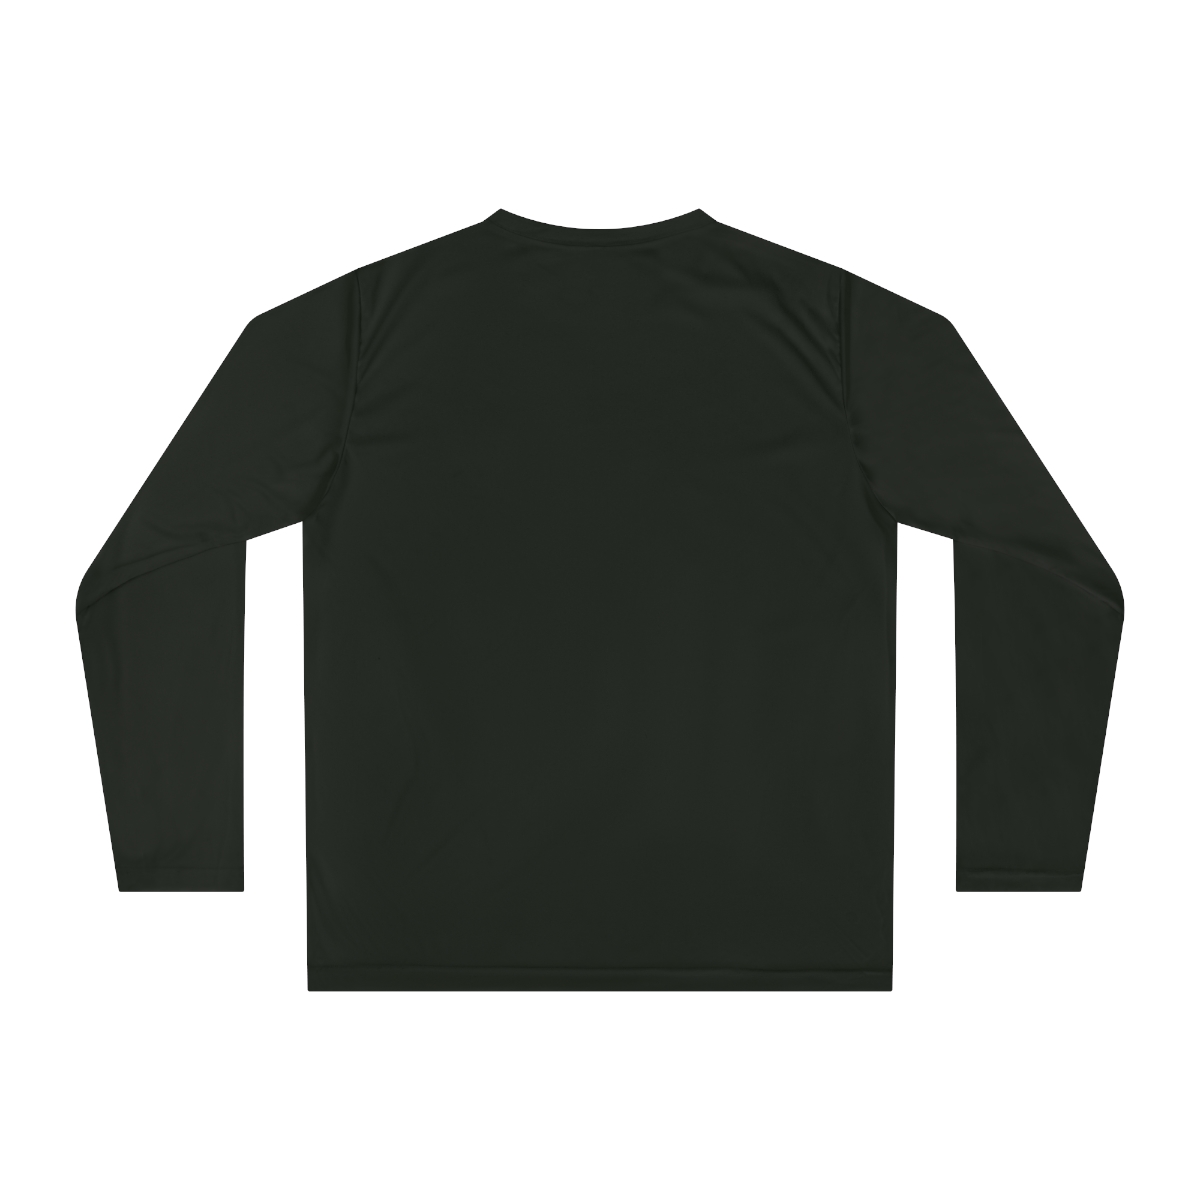 Unisex Performance Long Sleeve Shirt product thumbnail image